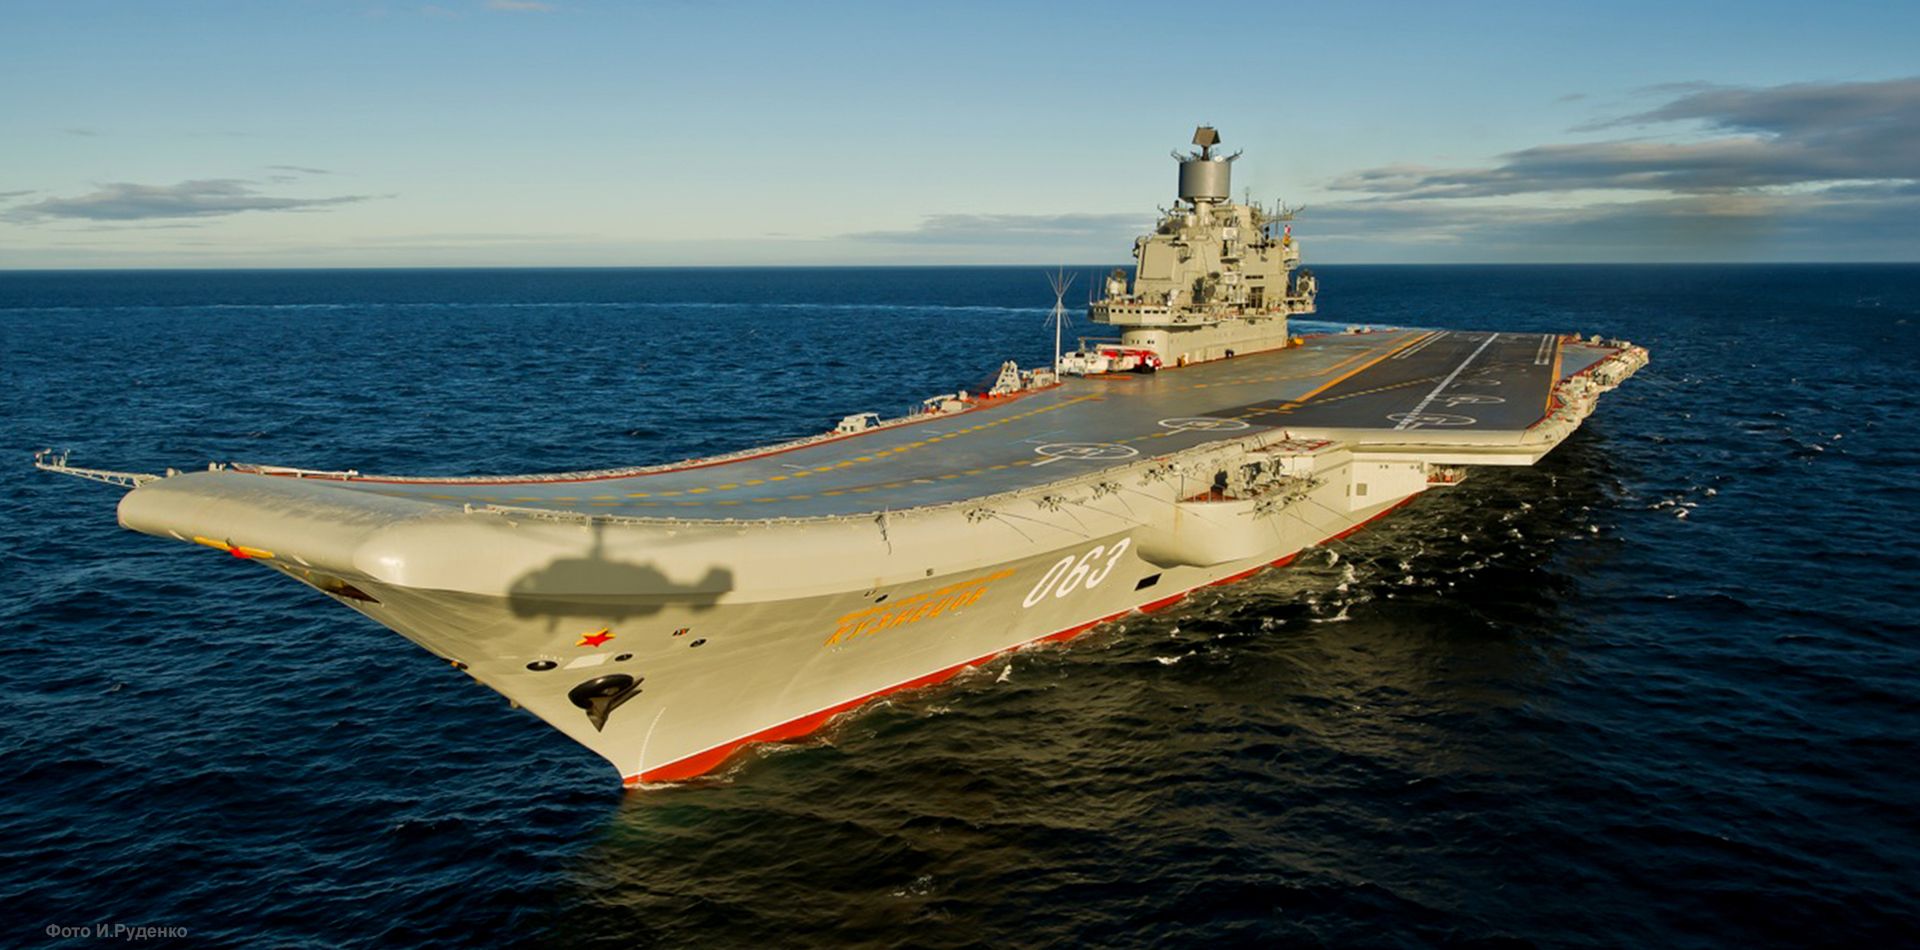 Rosyjski lotniskowiec "Admirał Kuzniecow" poważnie uszkodzony